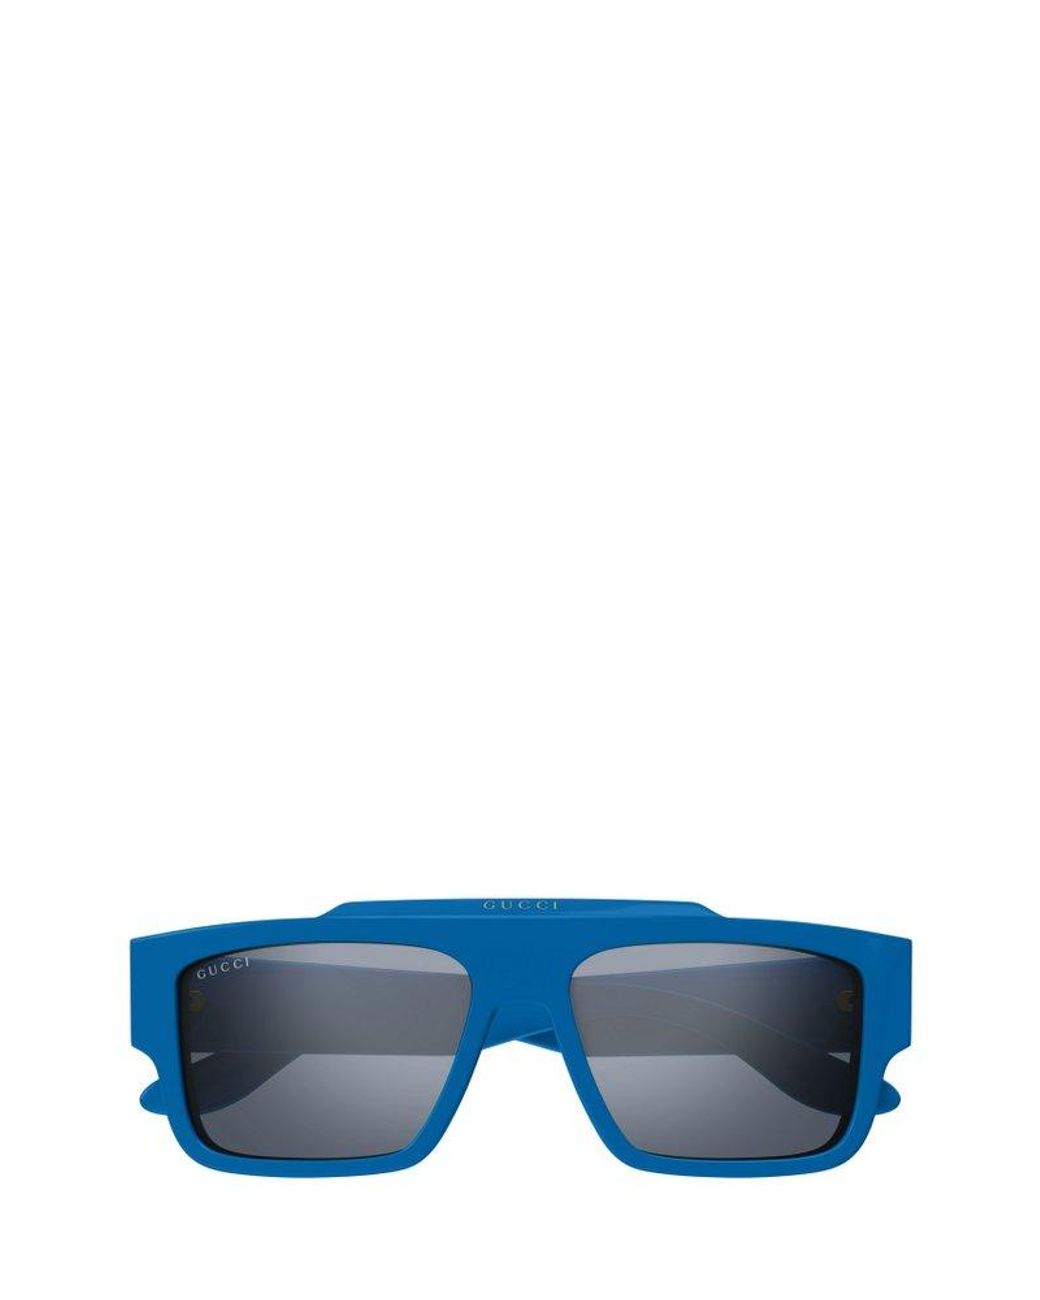 1.1 Millionaires Sunglasses - Multicolore - Men - Accessories